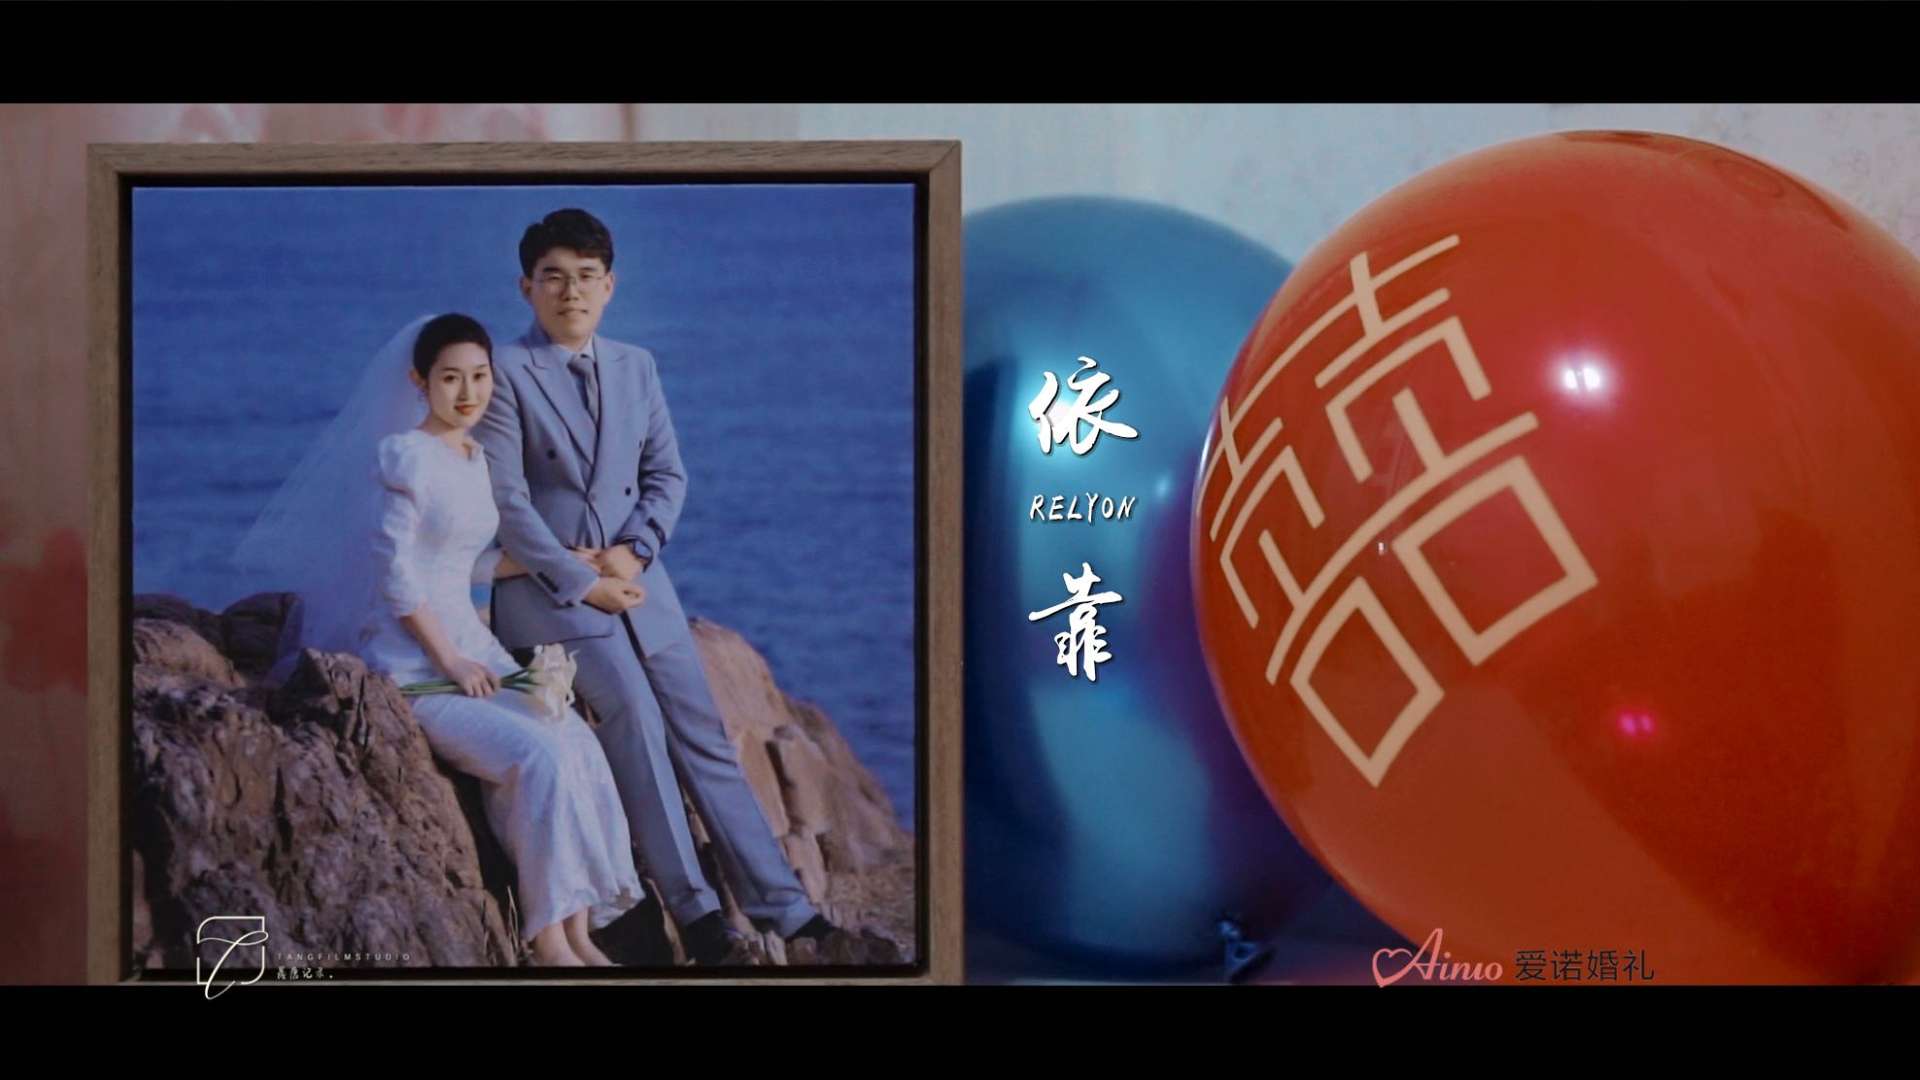 婚礼大电影《依靠》-爱诺出品-23.5.7